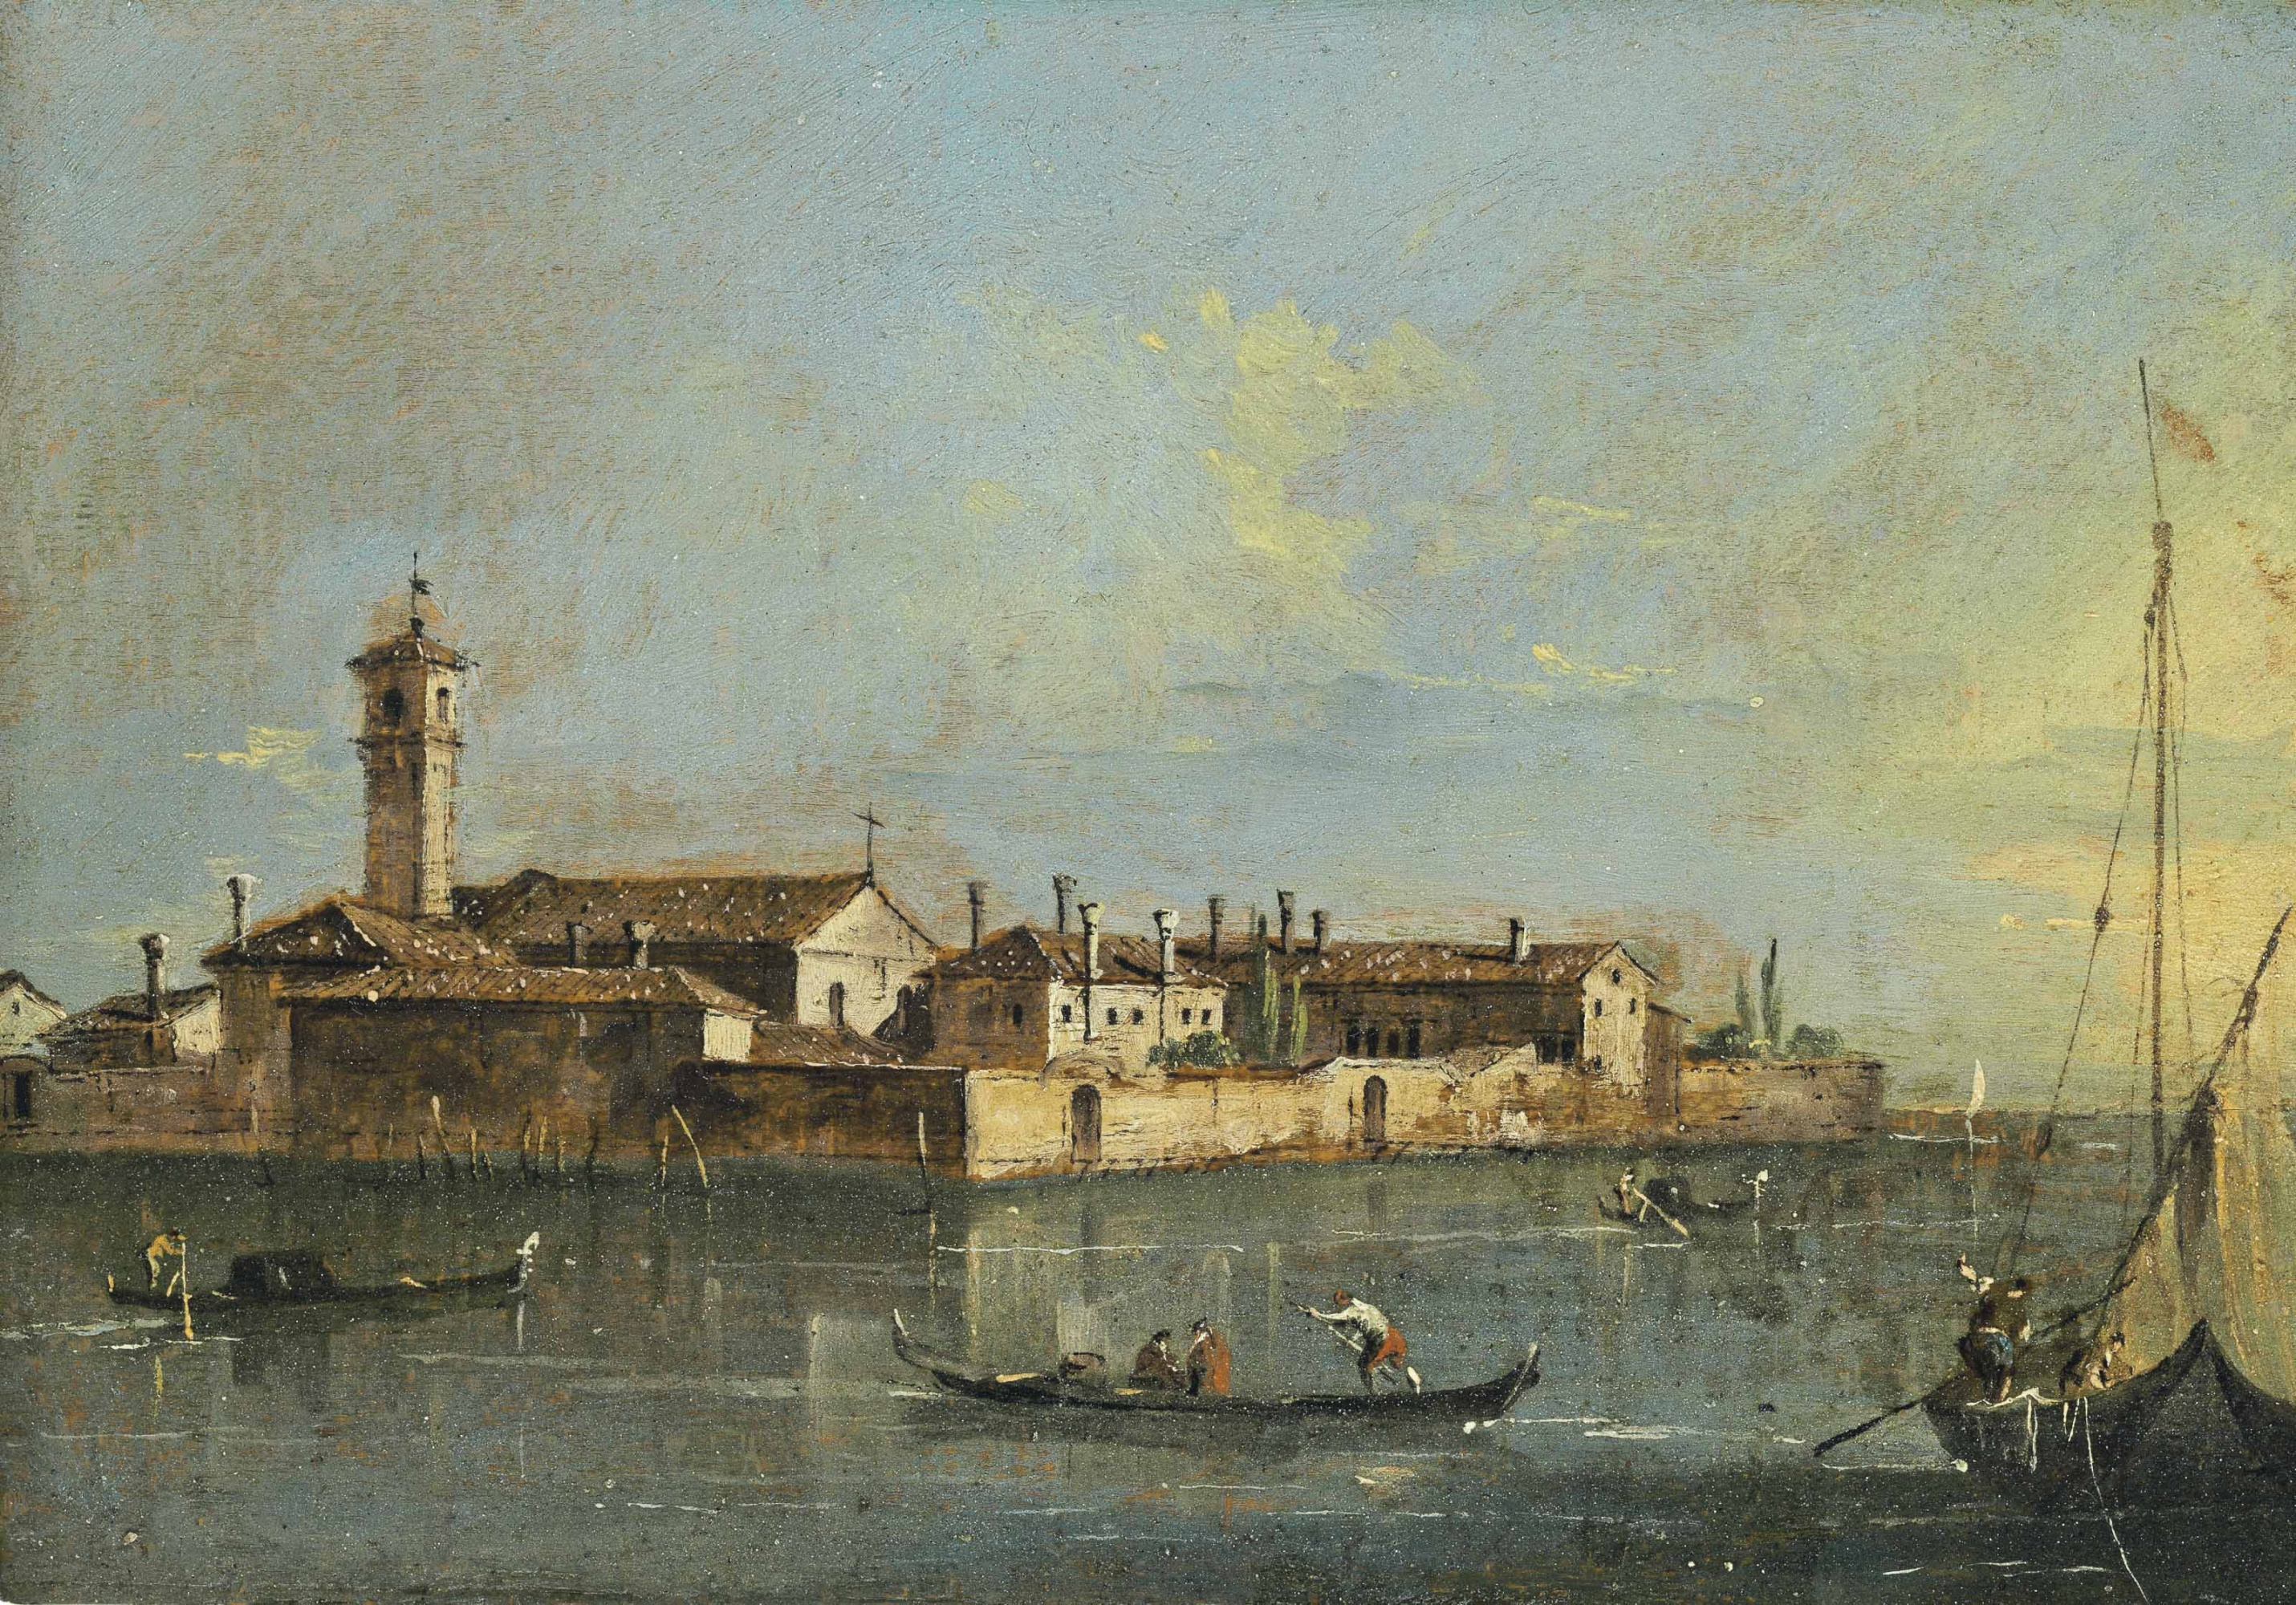 Island of Lazzaretto in Venice